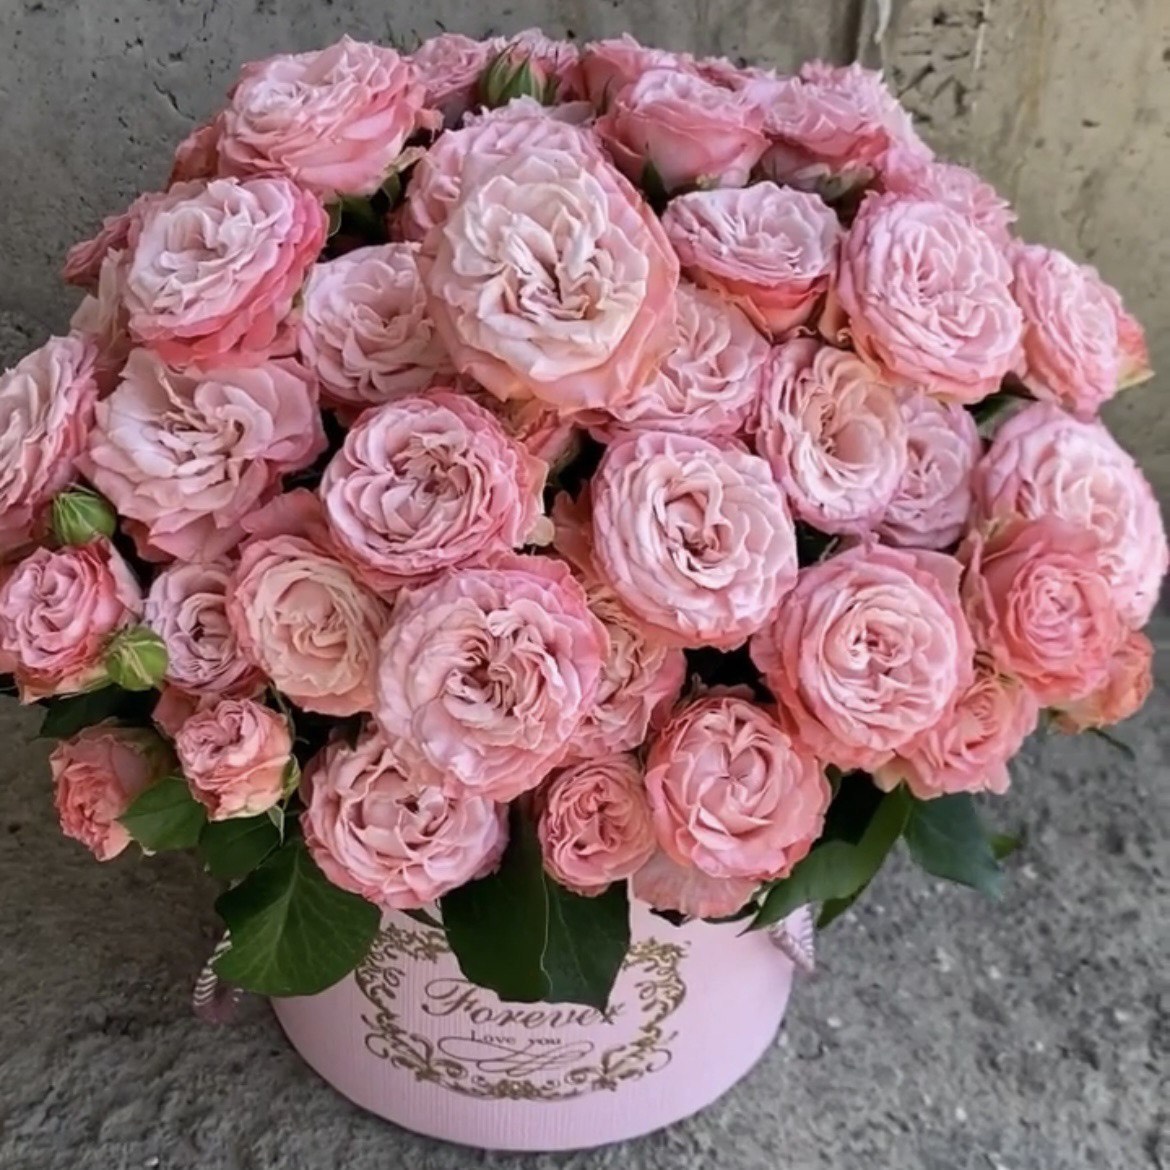 Яркая радость - изящный букет из роз насыщенного цвета, в коробке.